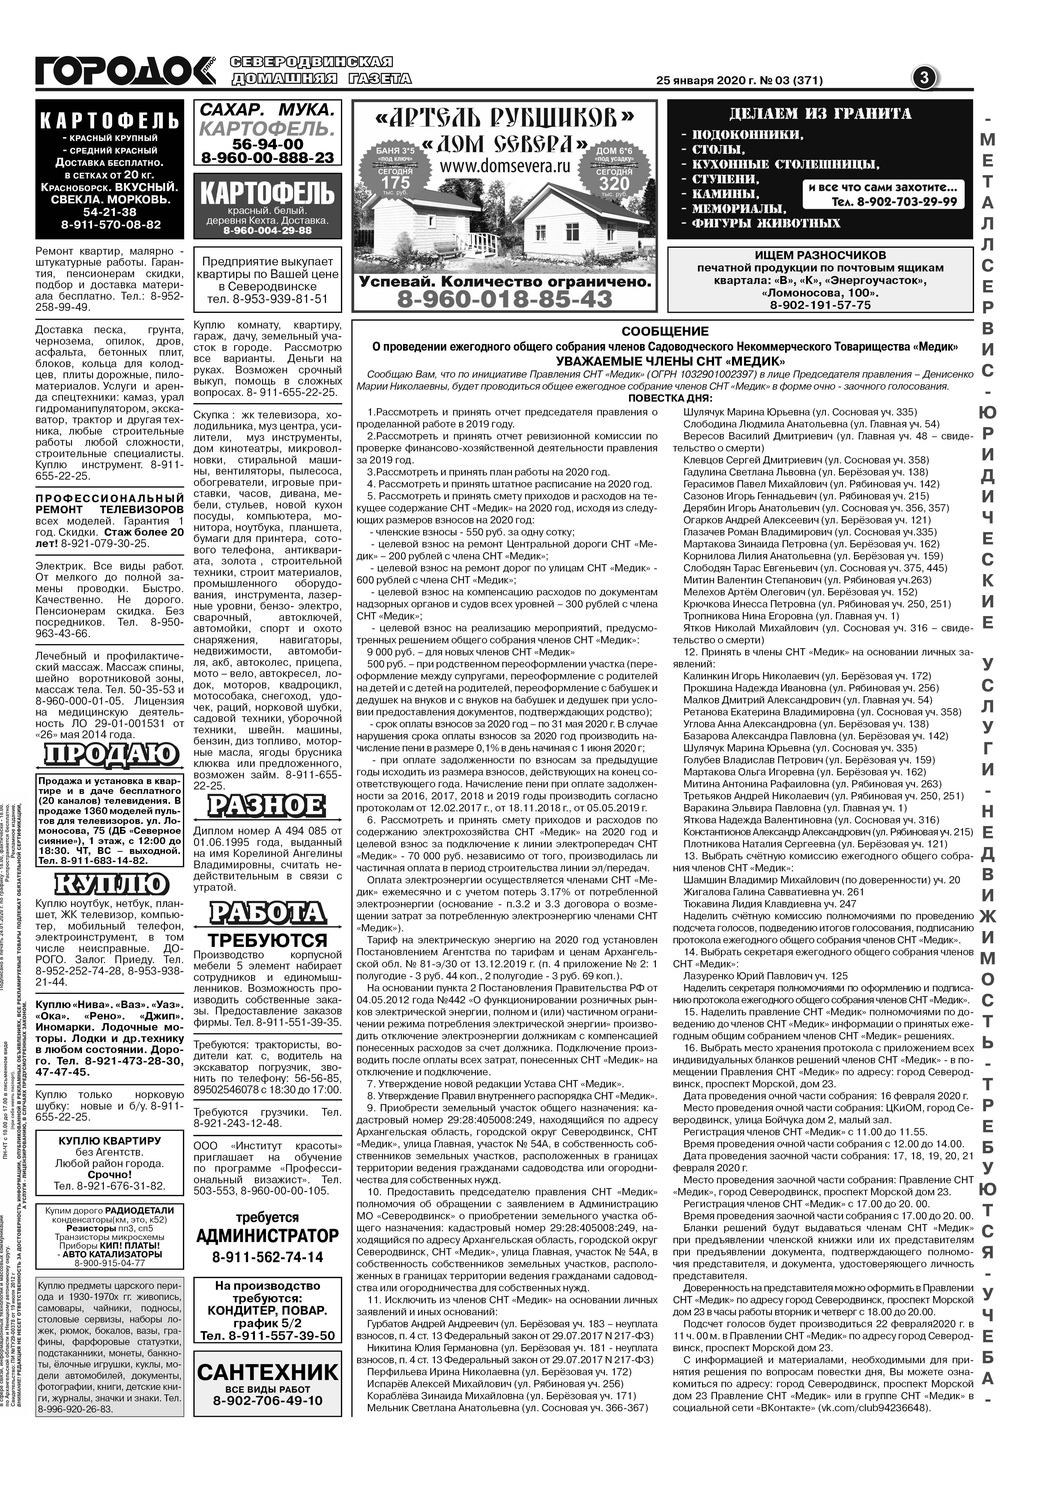 Городок плюс, выпуск номер 3 от 25 января 2020 года, страница 3.